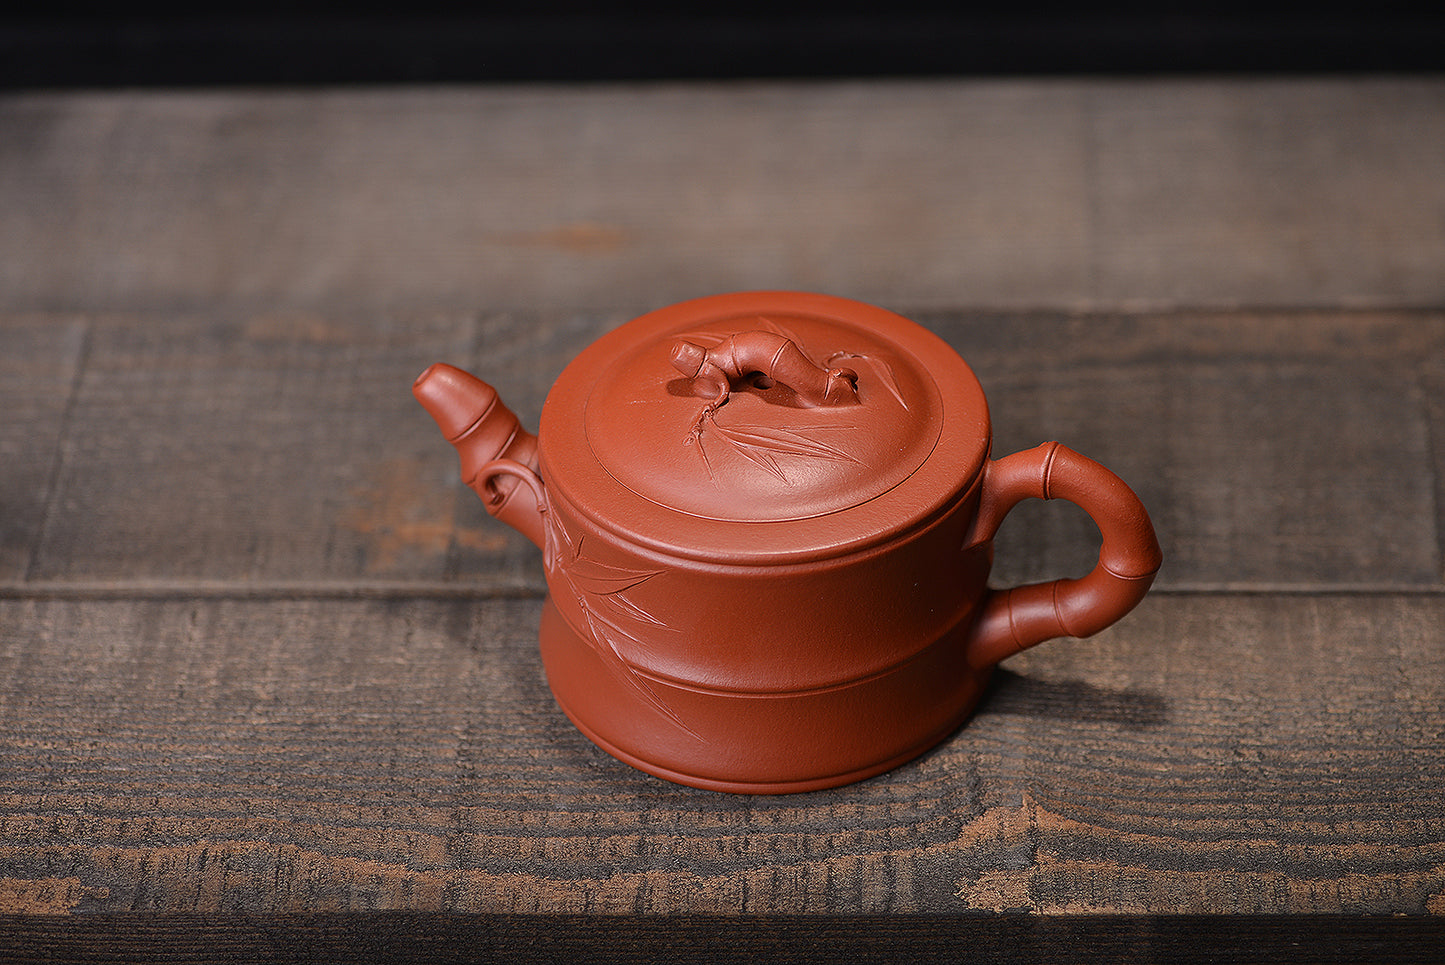 Zhuni Dahongpao Zisha Teapot